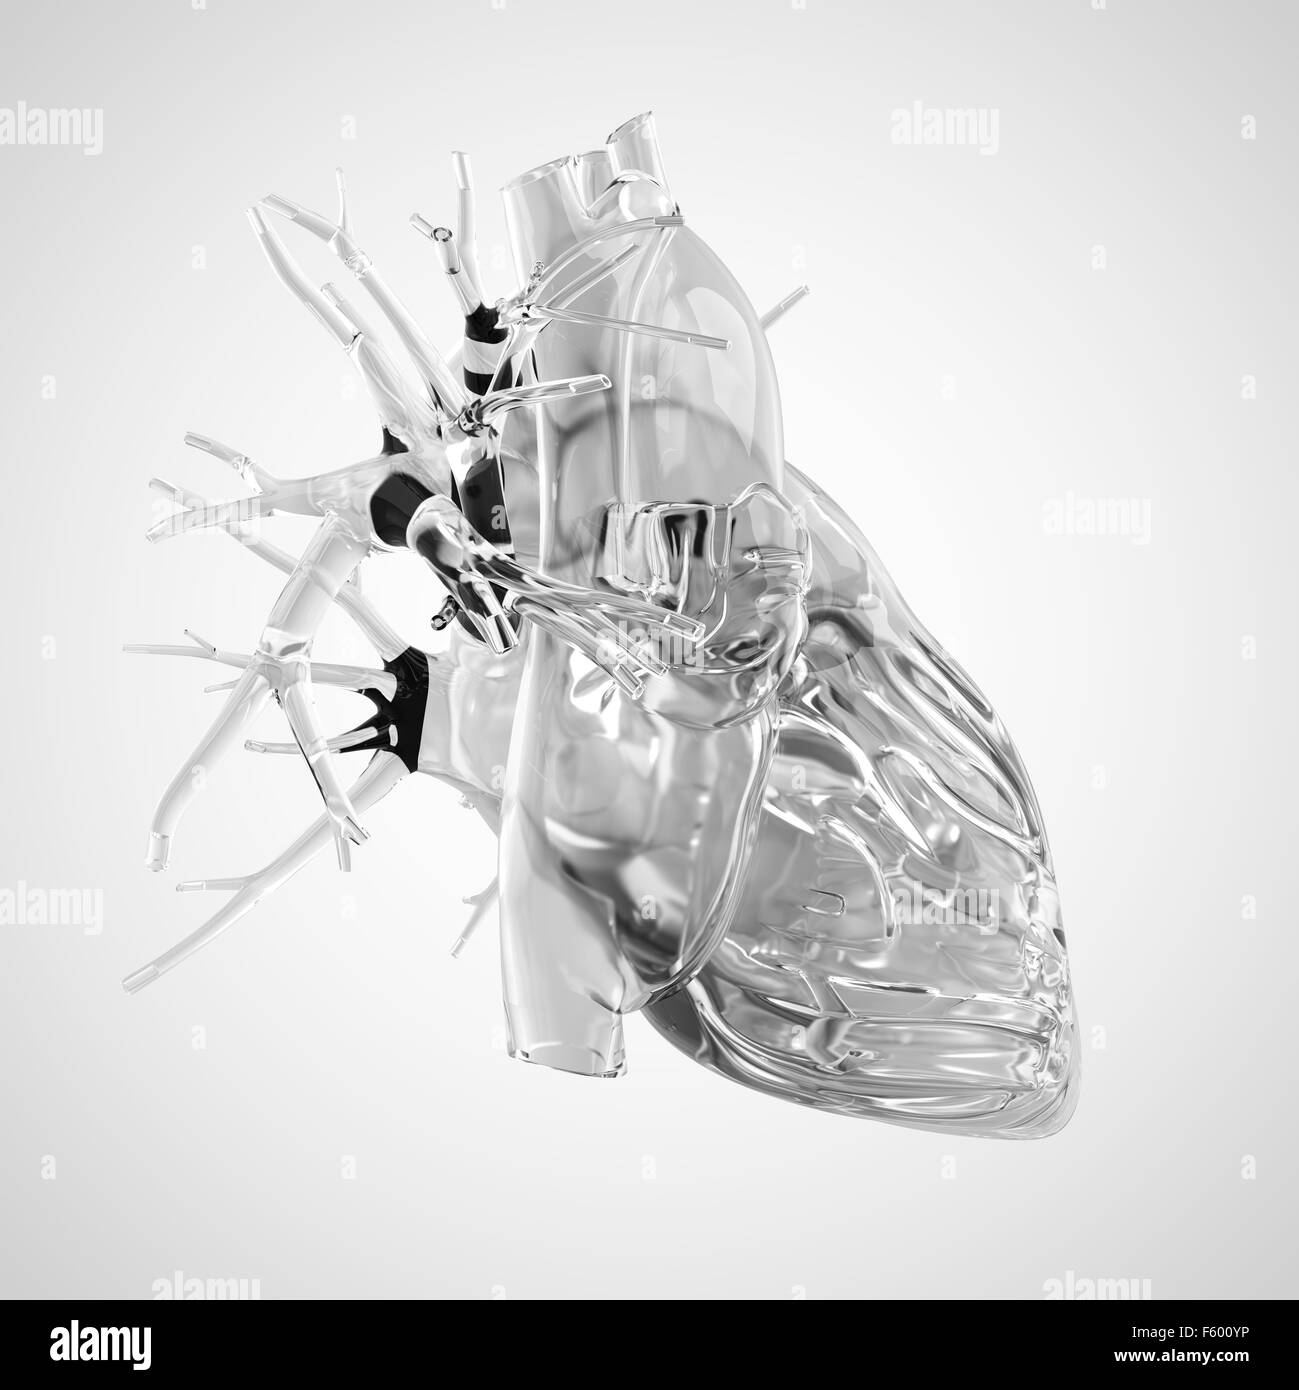 Dal punto di vista medico illustrazione accurata del cuore umano fatto di vetro Foto Stock